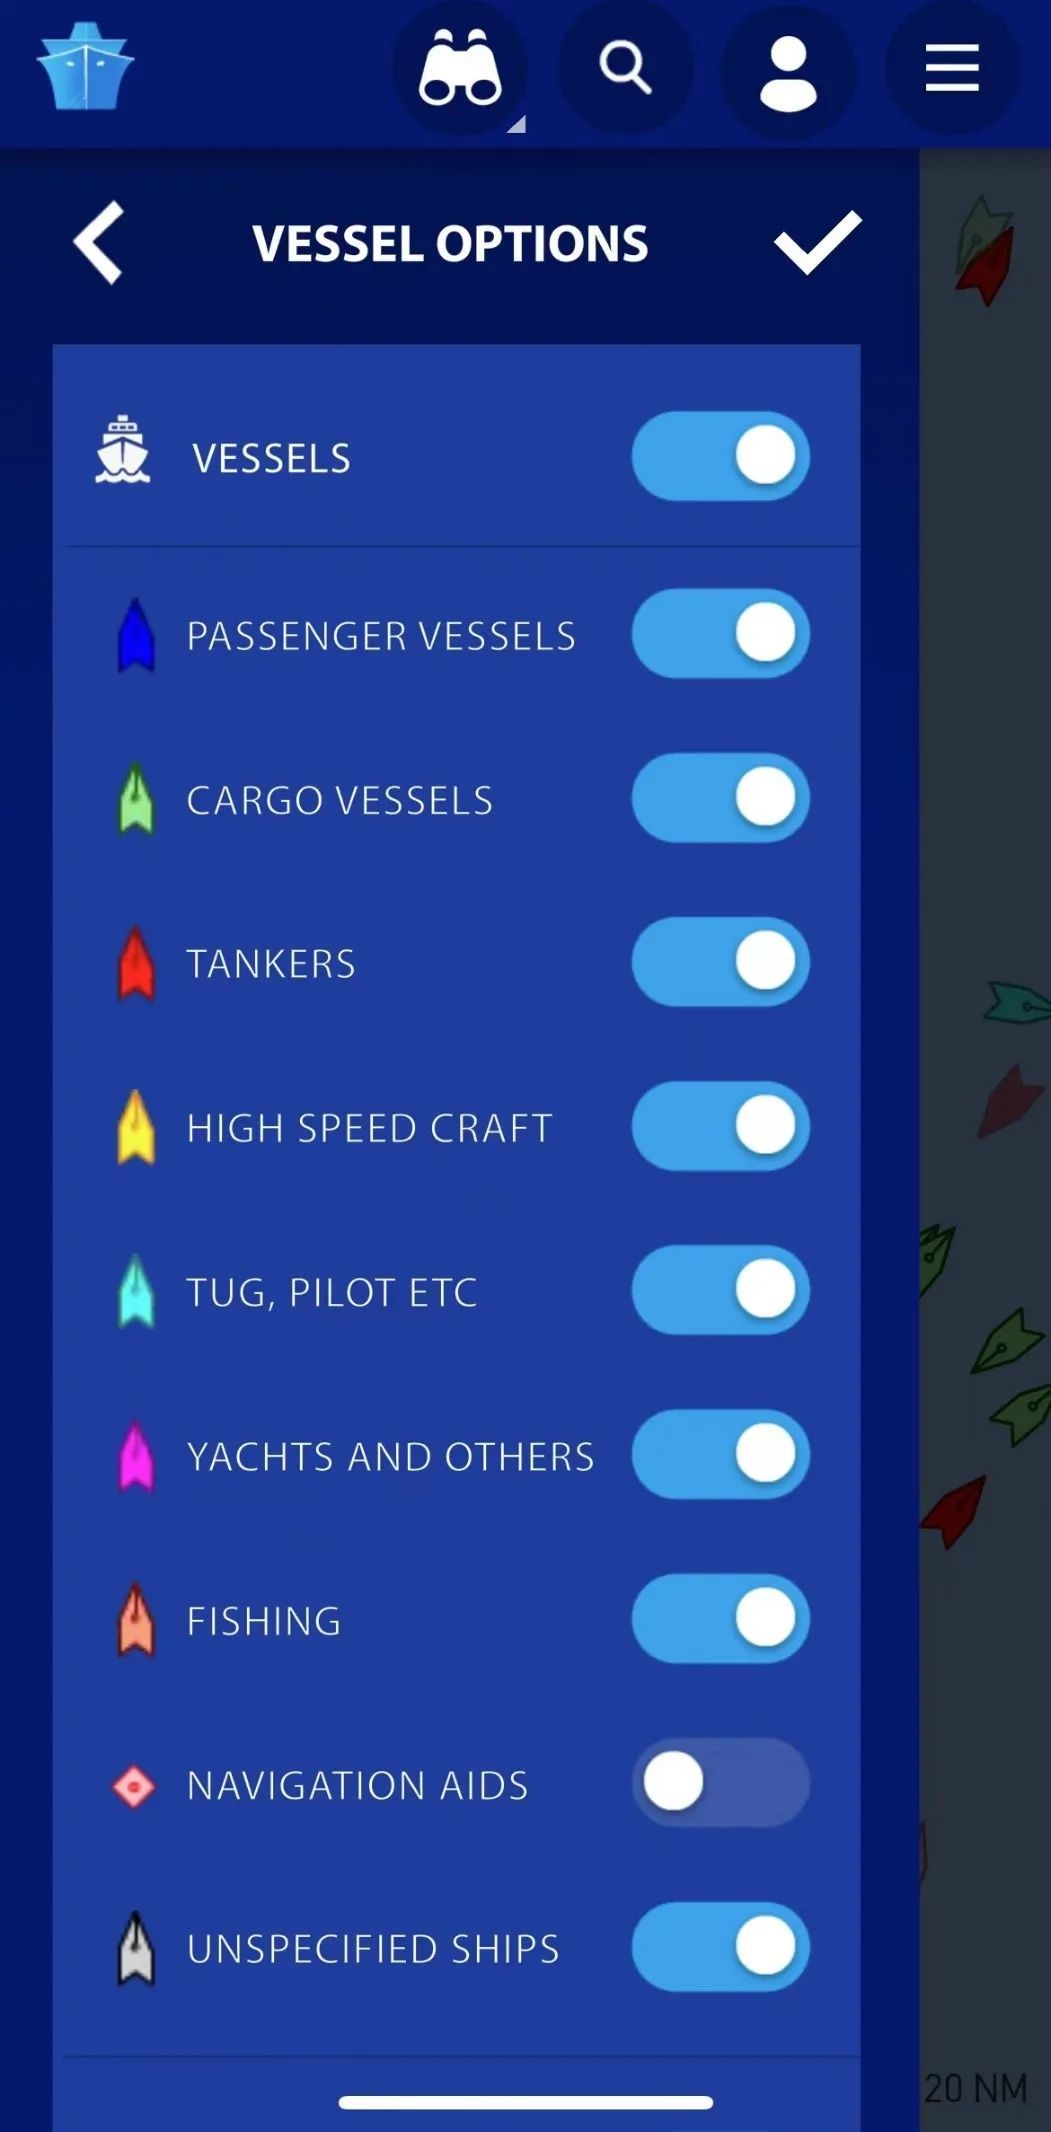 MarineTraffic依据用途对不同船舶及辅助设备进行了类型划分。